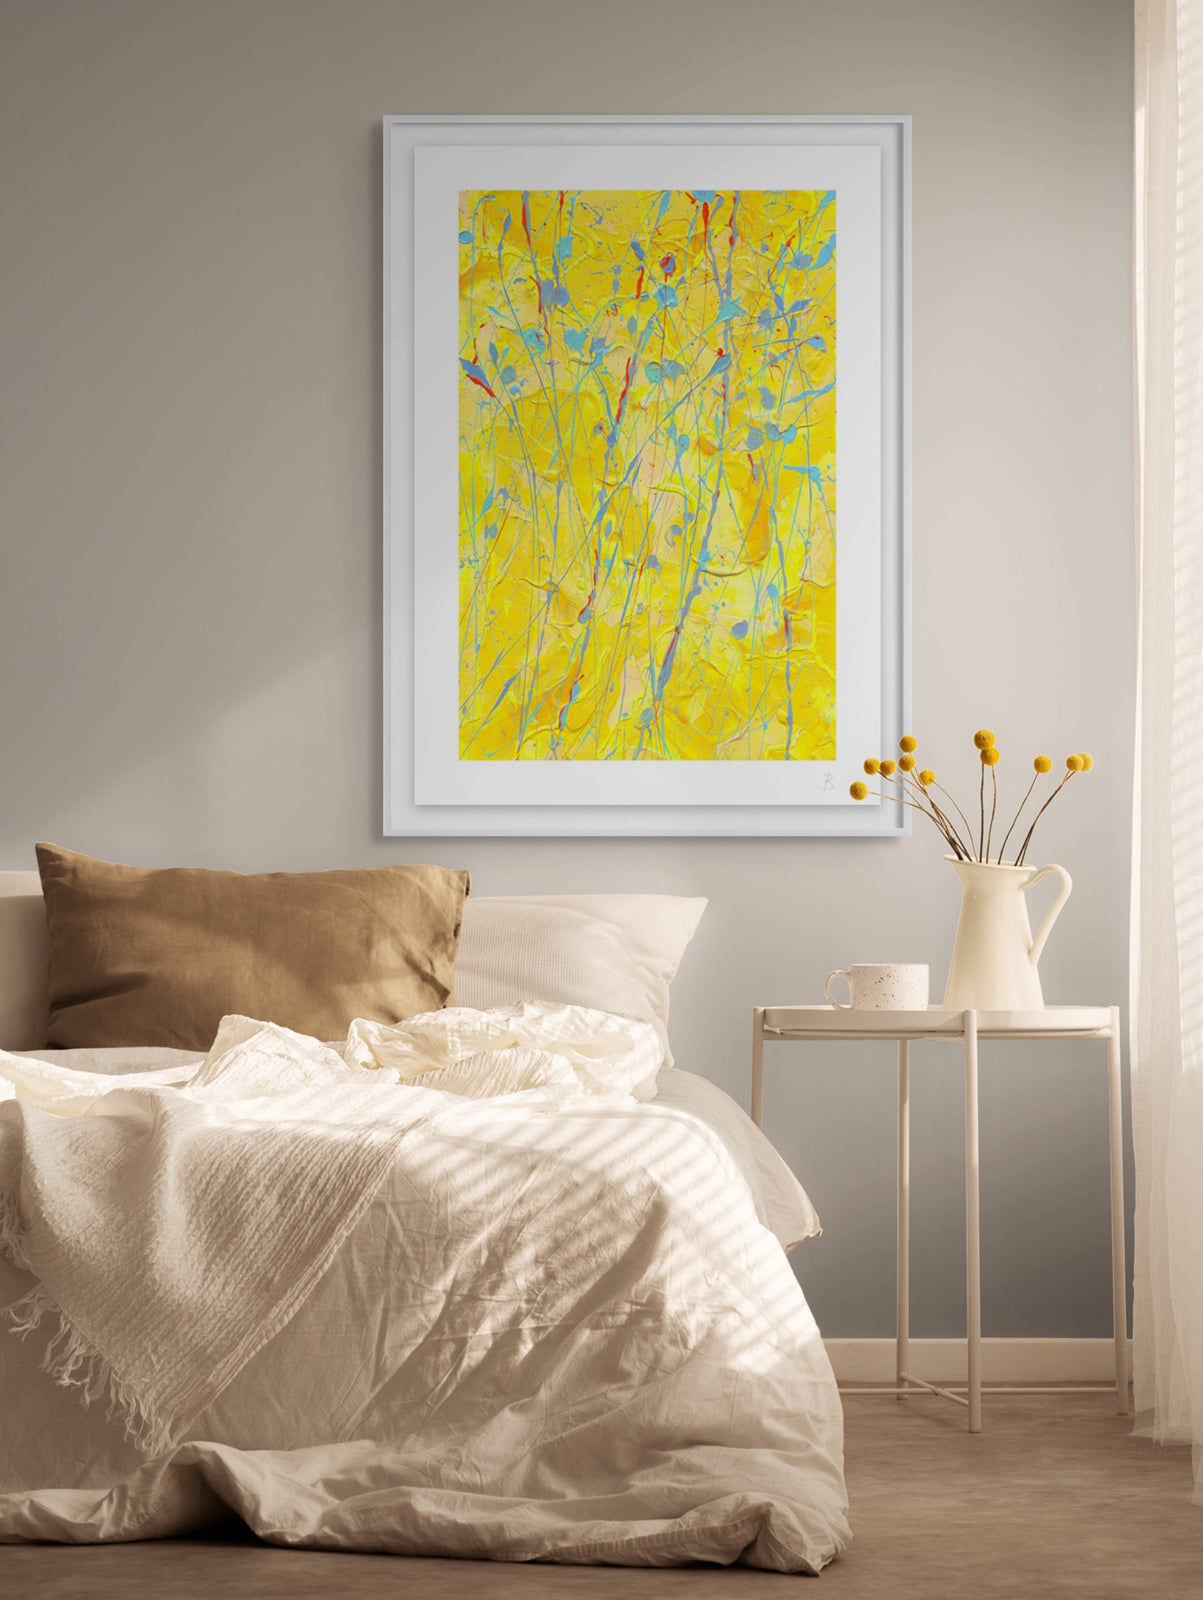 'Sunsflower' Fien Art Paper print Framed in White Hanging in Bedroom. Available unframed or framed, Learn more